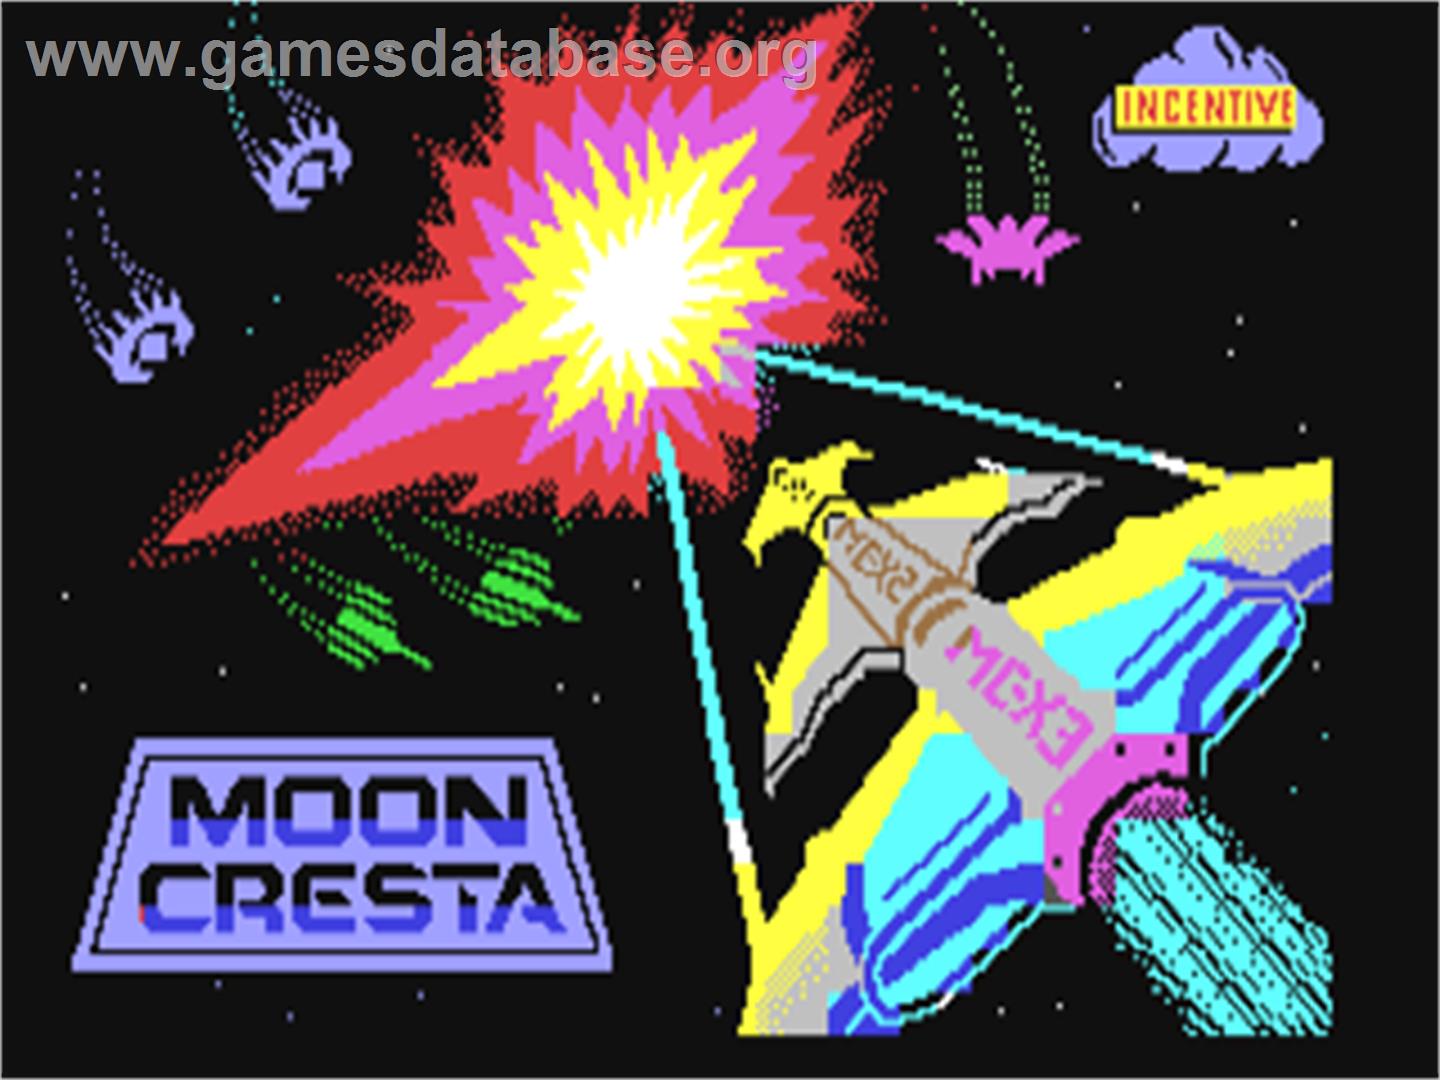 Moon Cresta - Commodore 64 - Artwork - Title Screen